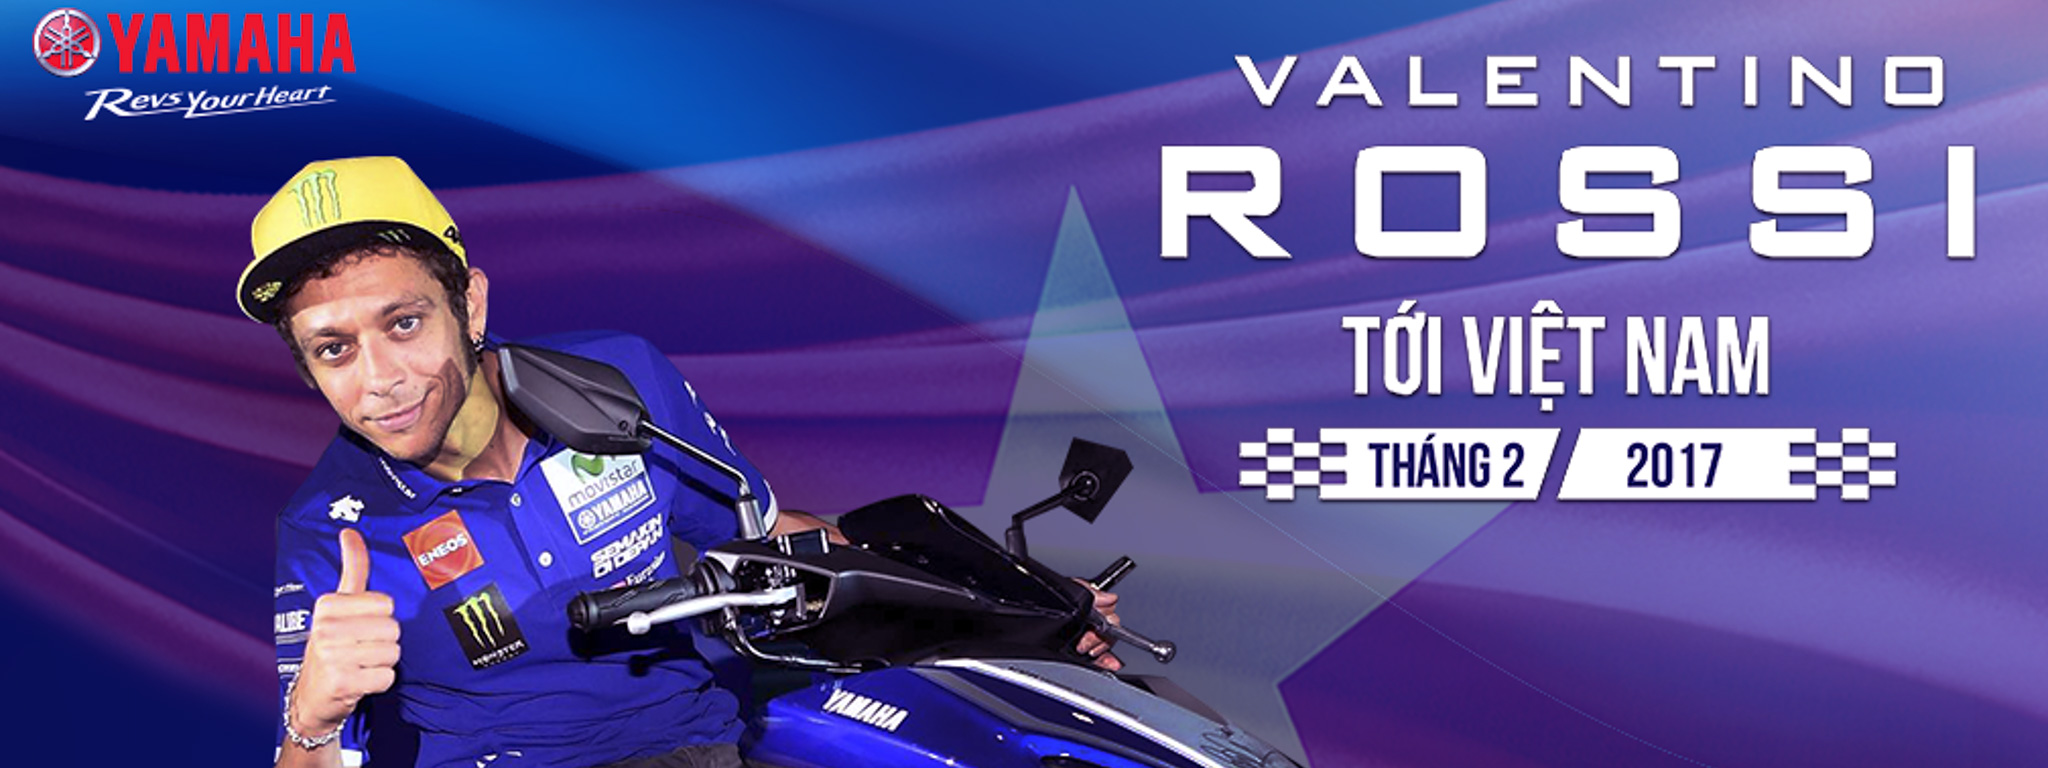 Tháng 02/2017, Valentino Rossi sẽ đến Việt Nam!